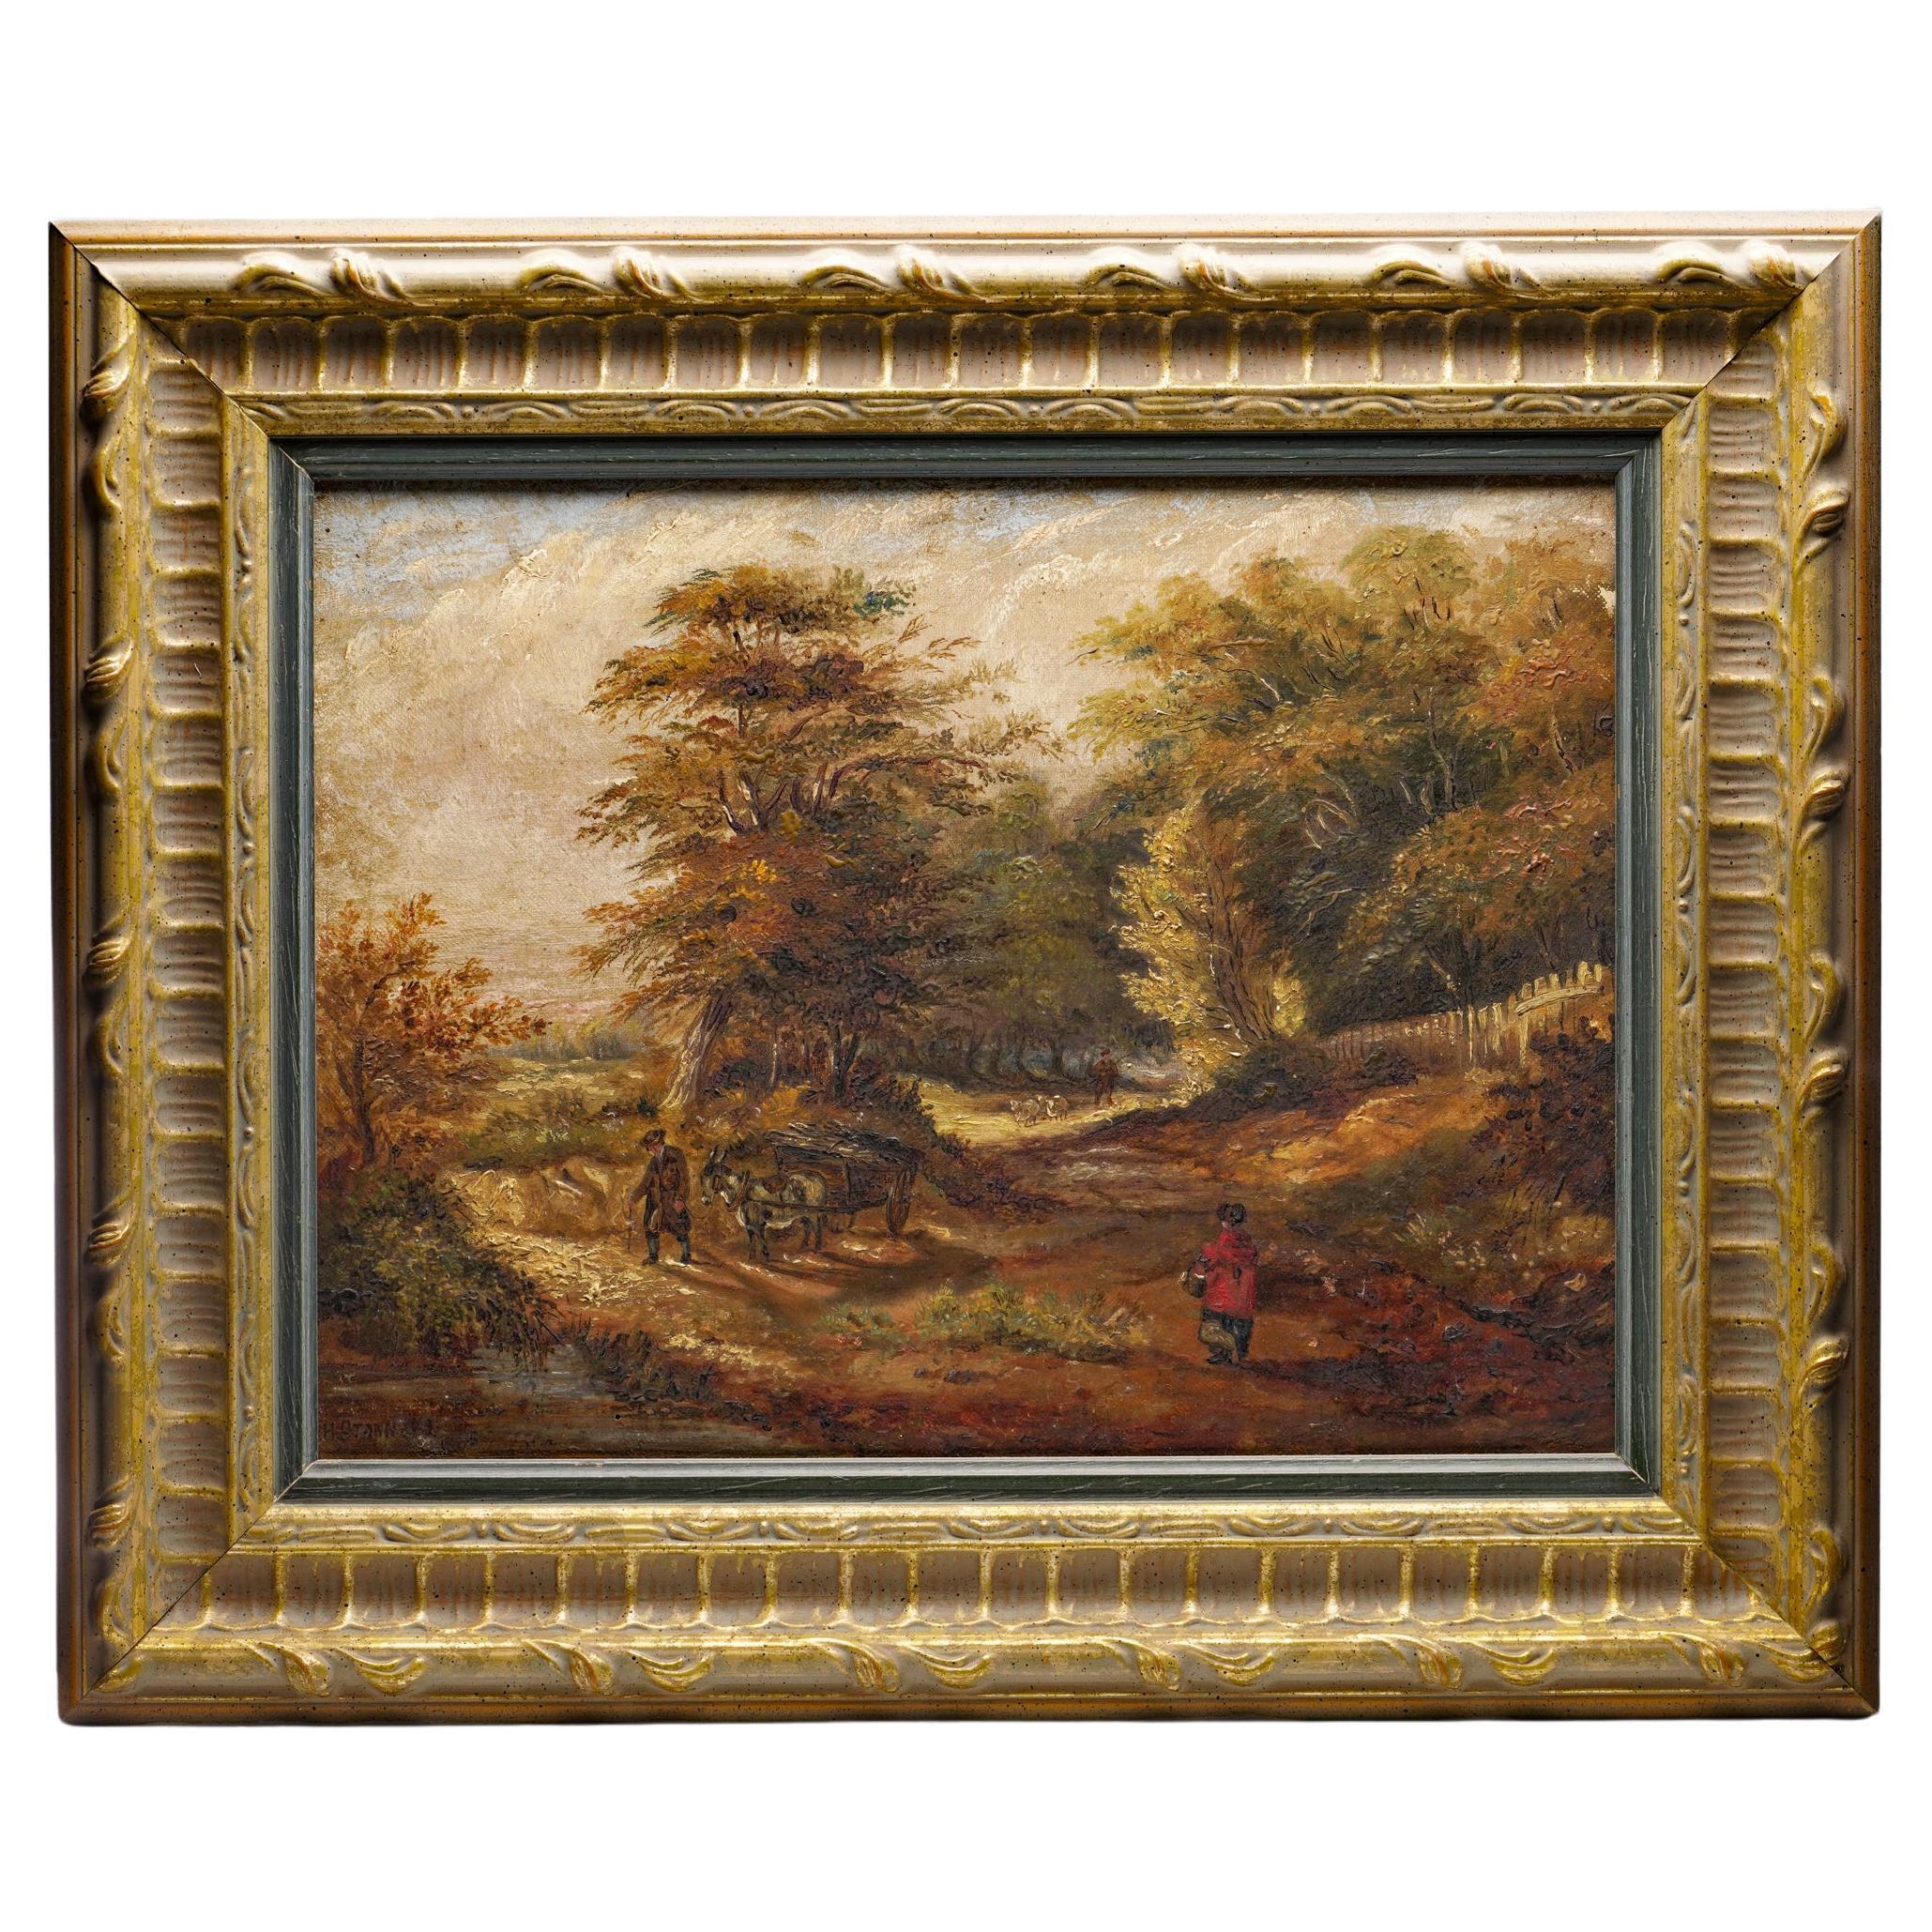 H. Stannava 19ème siècle Peinture à l'huile sur toile avec scène rurale